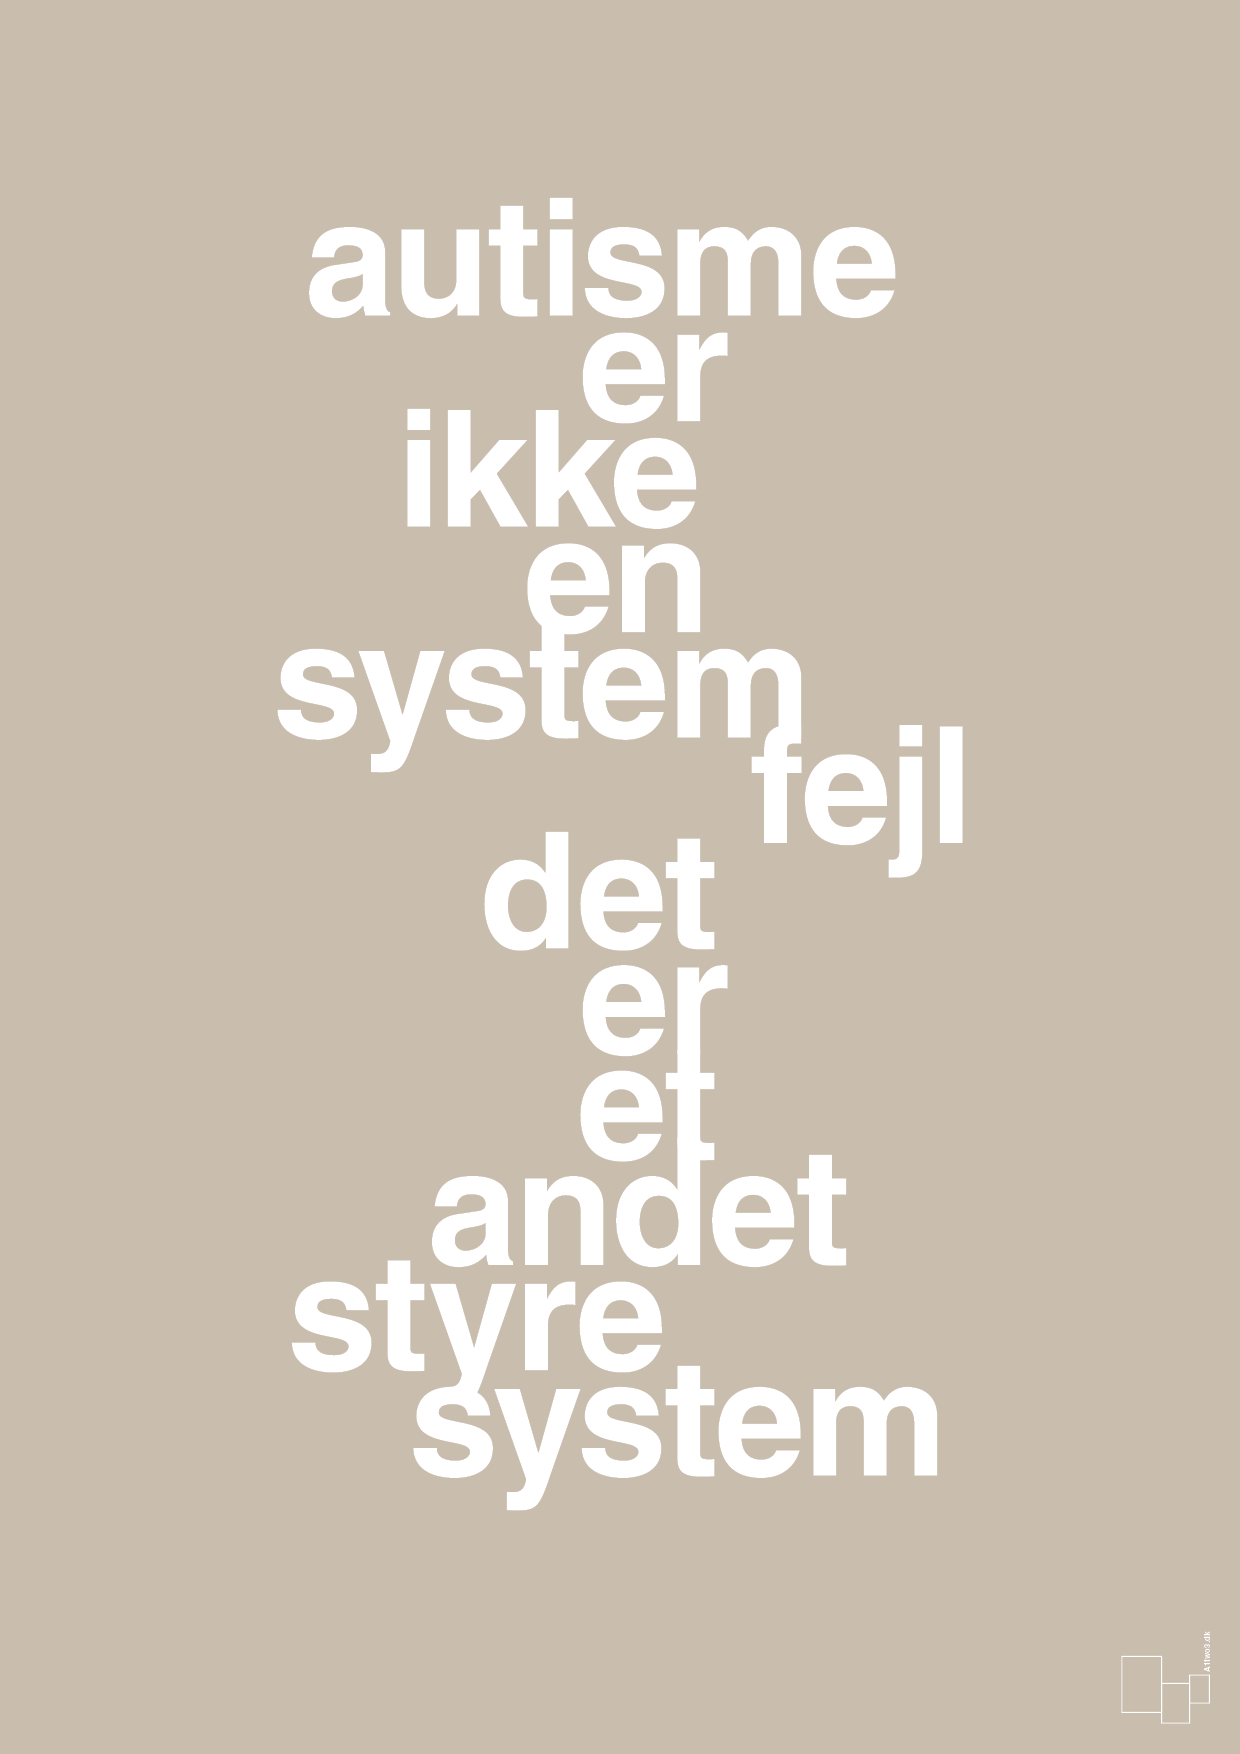 autisme er ikke en systemfejl - Plakat med Samfund i Creamy Mushroom